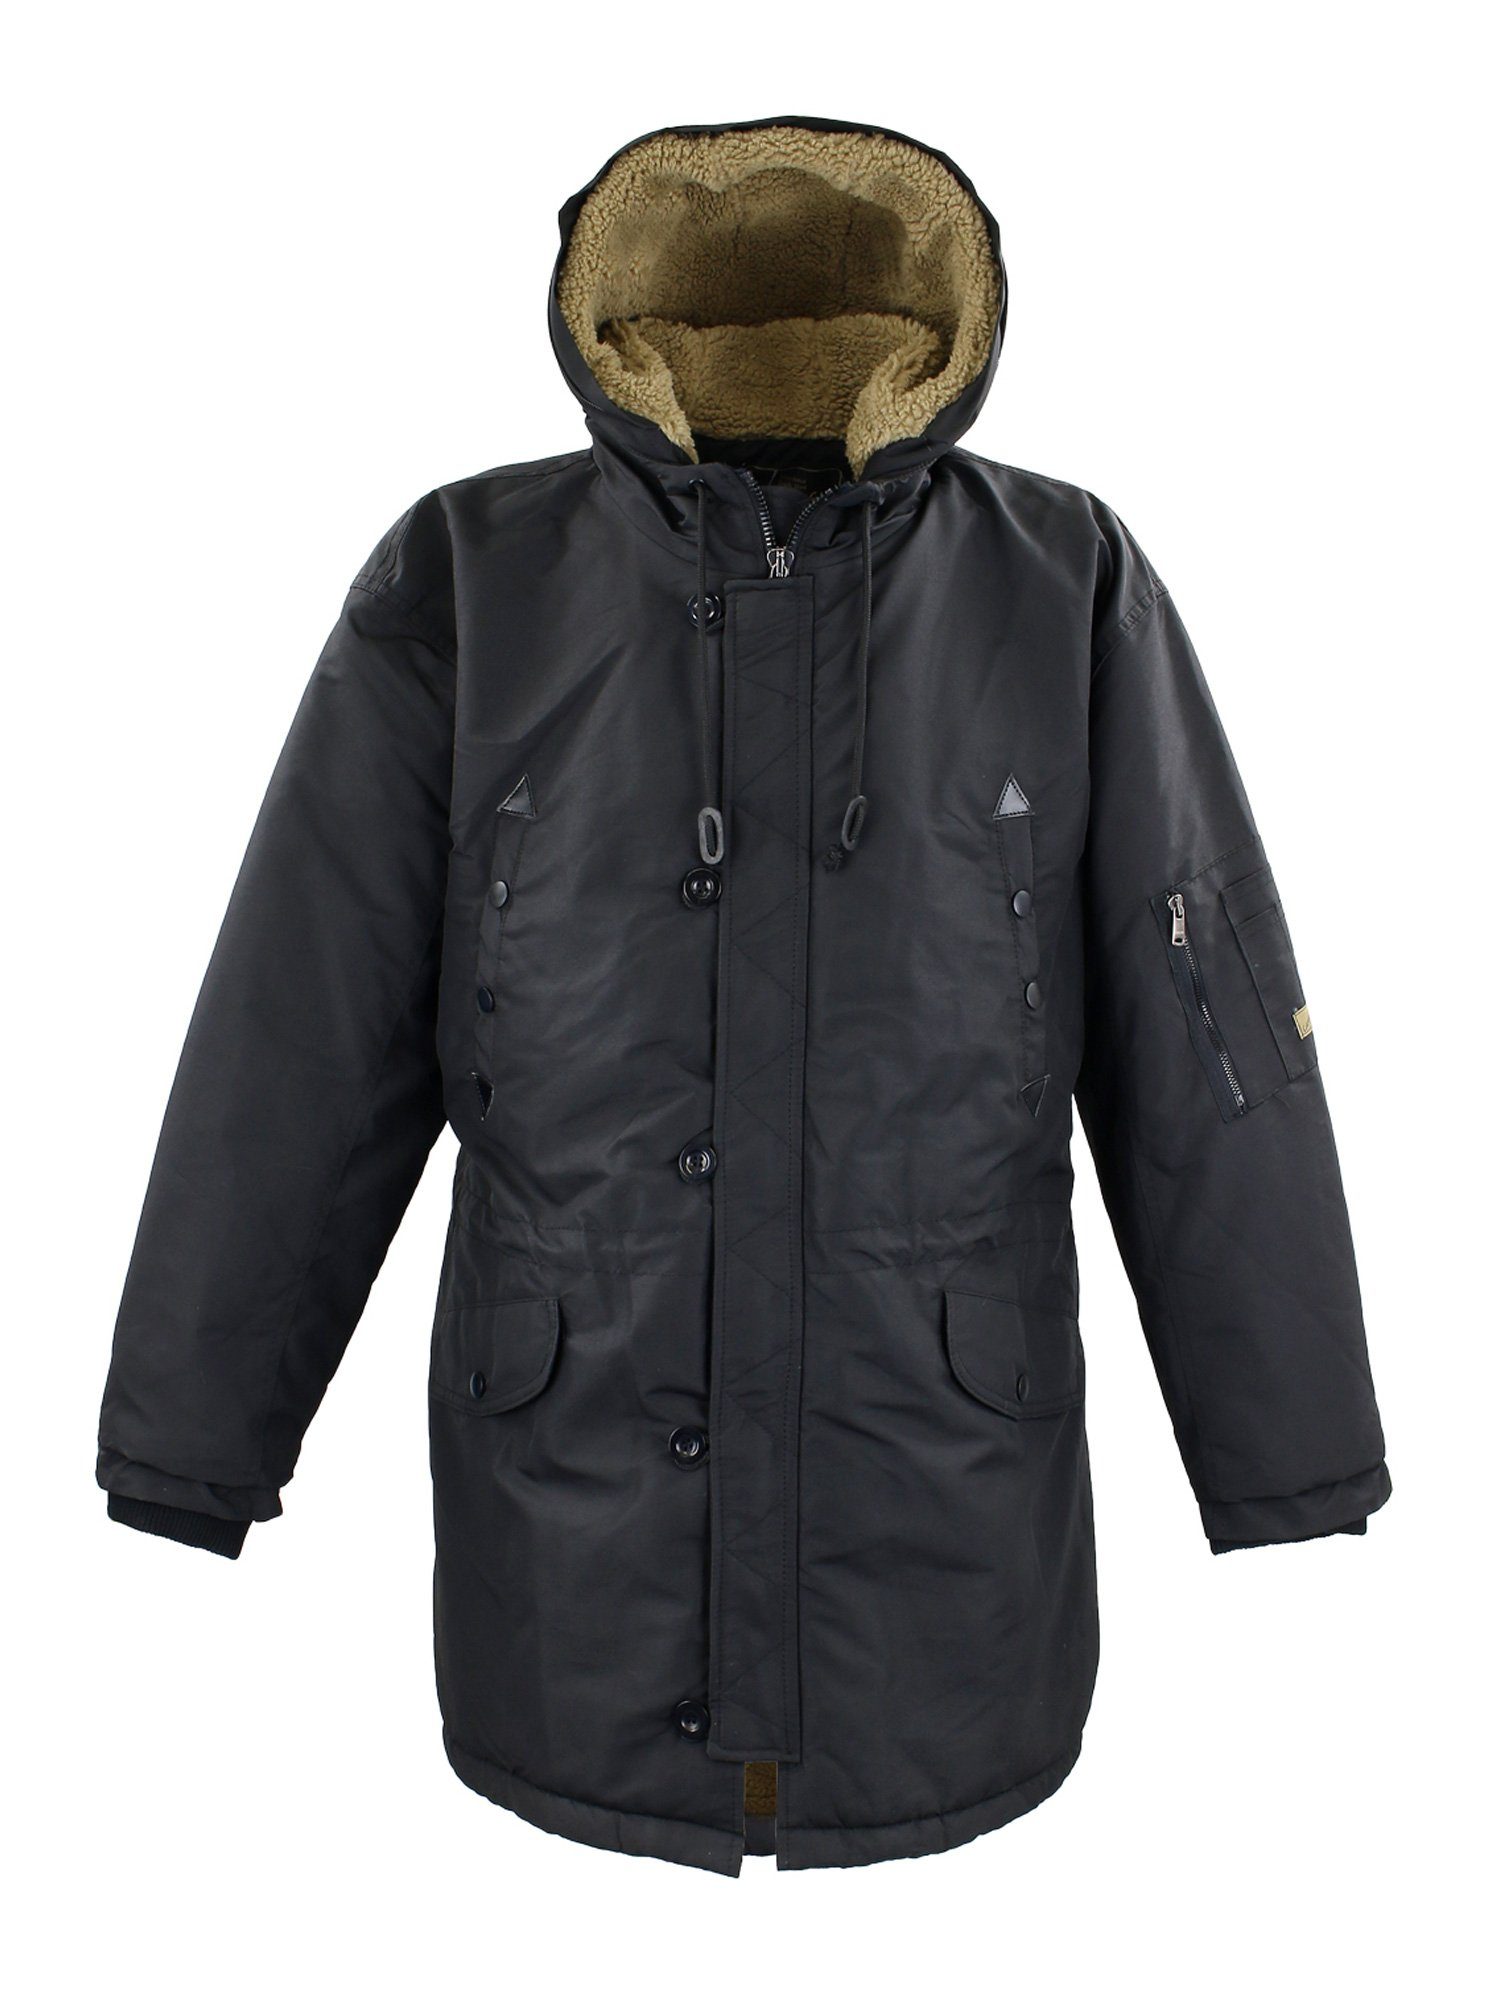 Lavecchia Winterjacke Übergrößen und abnehmbarer - Winddicht Kapuze Jacke Regenabweisend mit gefütterterter & schwarz LV-701